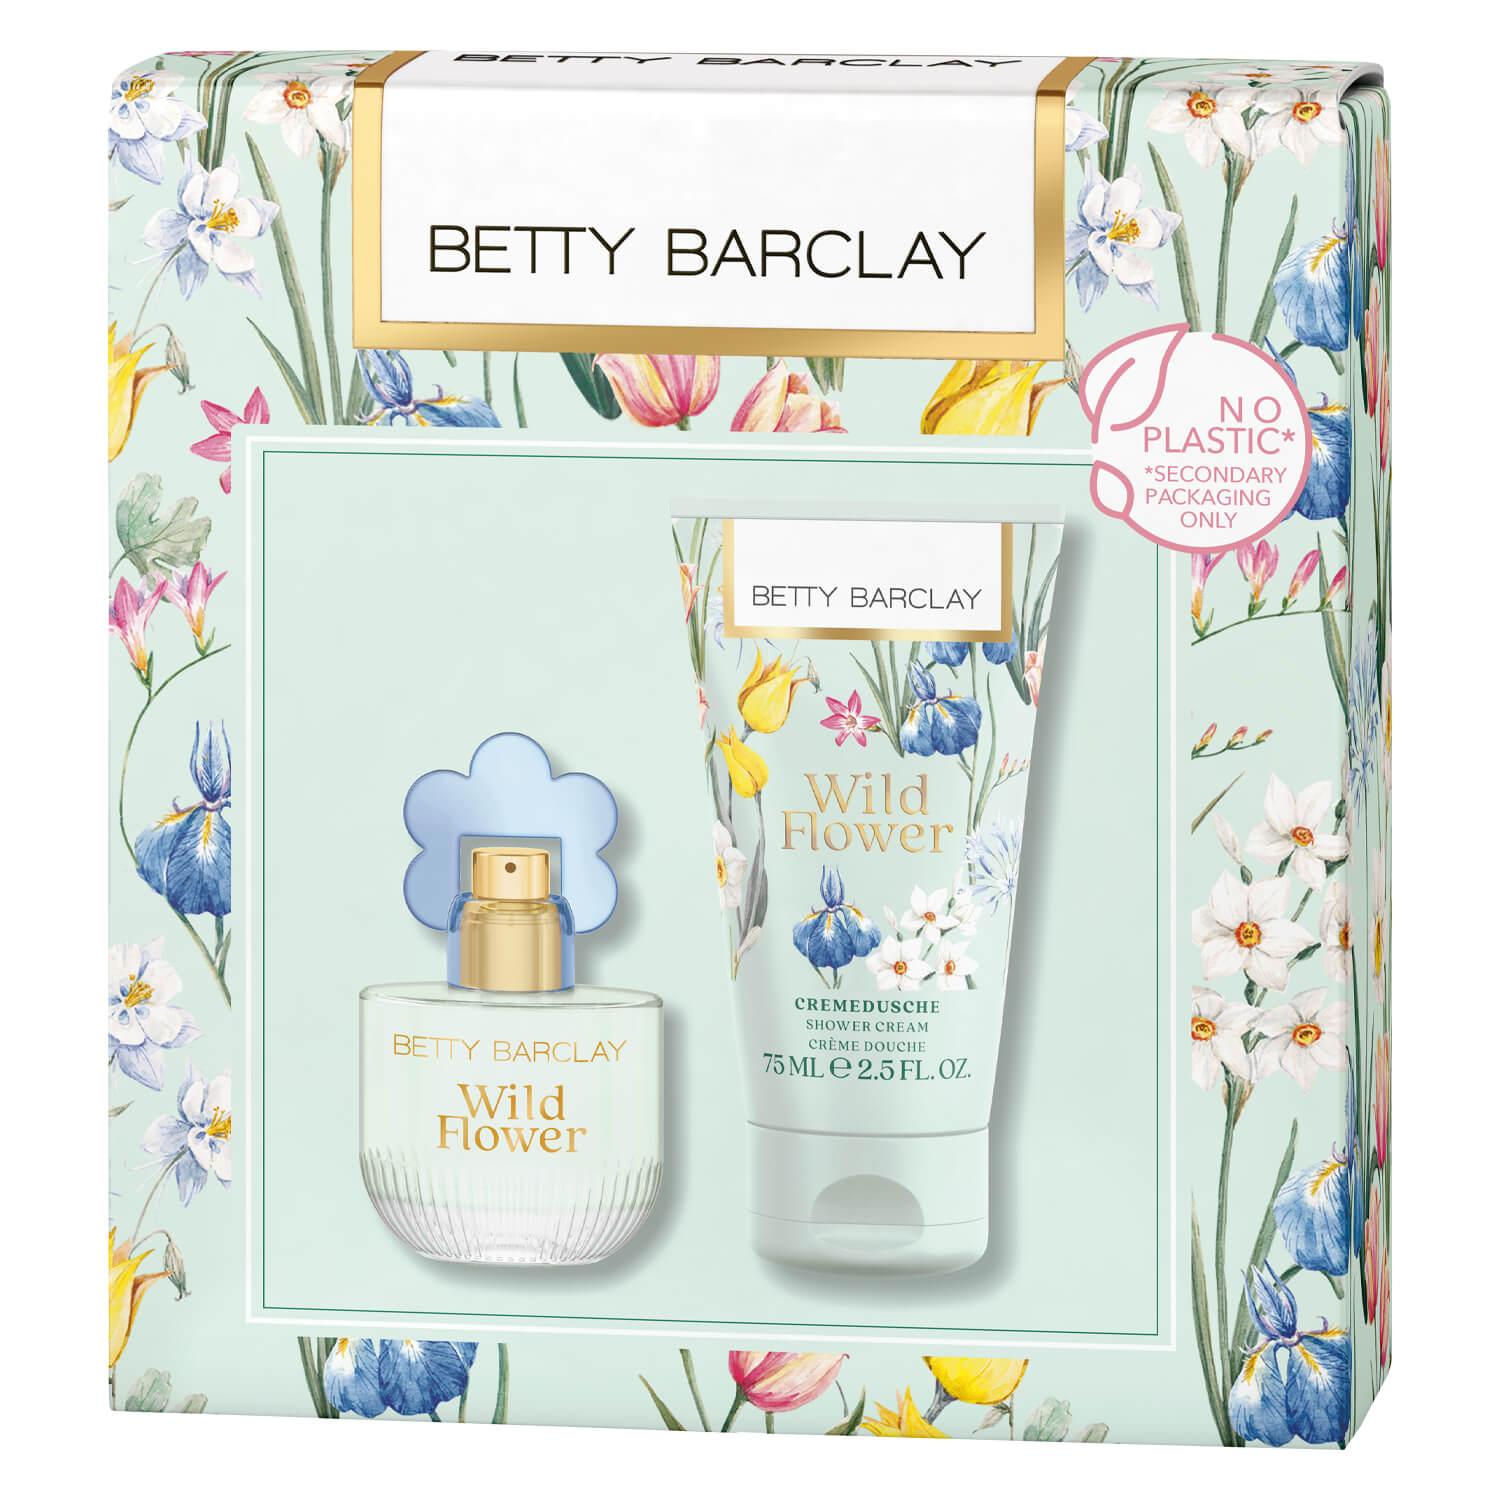 Betty Barclay - Wild Flower Eau de Toilette Set